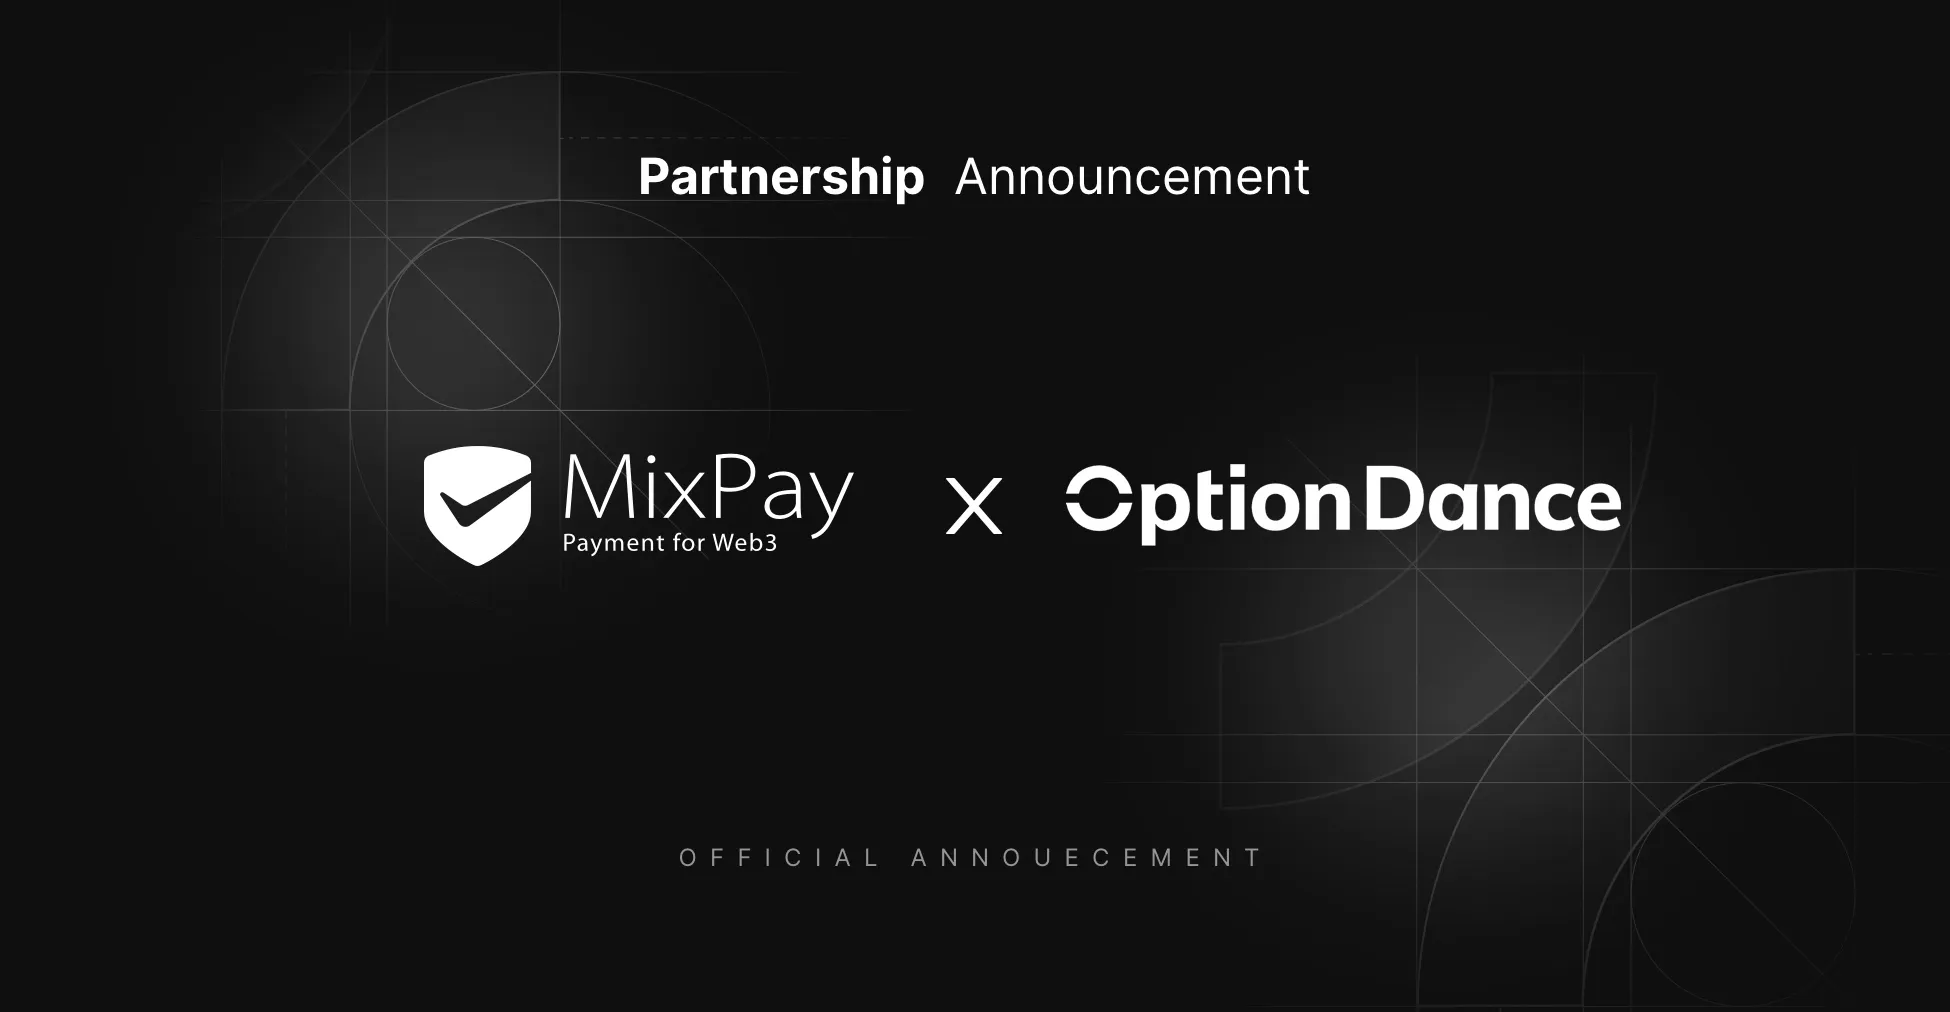 Ankündigung der Partnerschaft zwischen MixPay und OptionDance